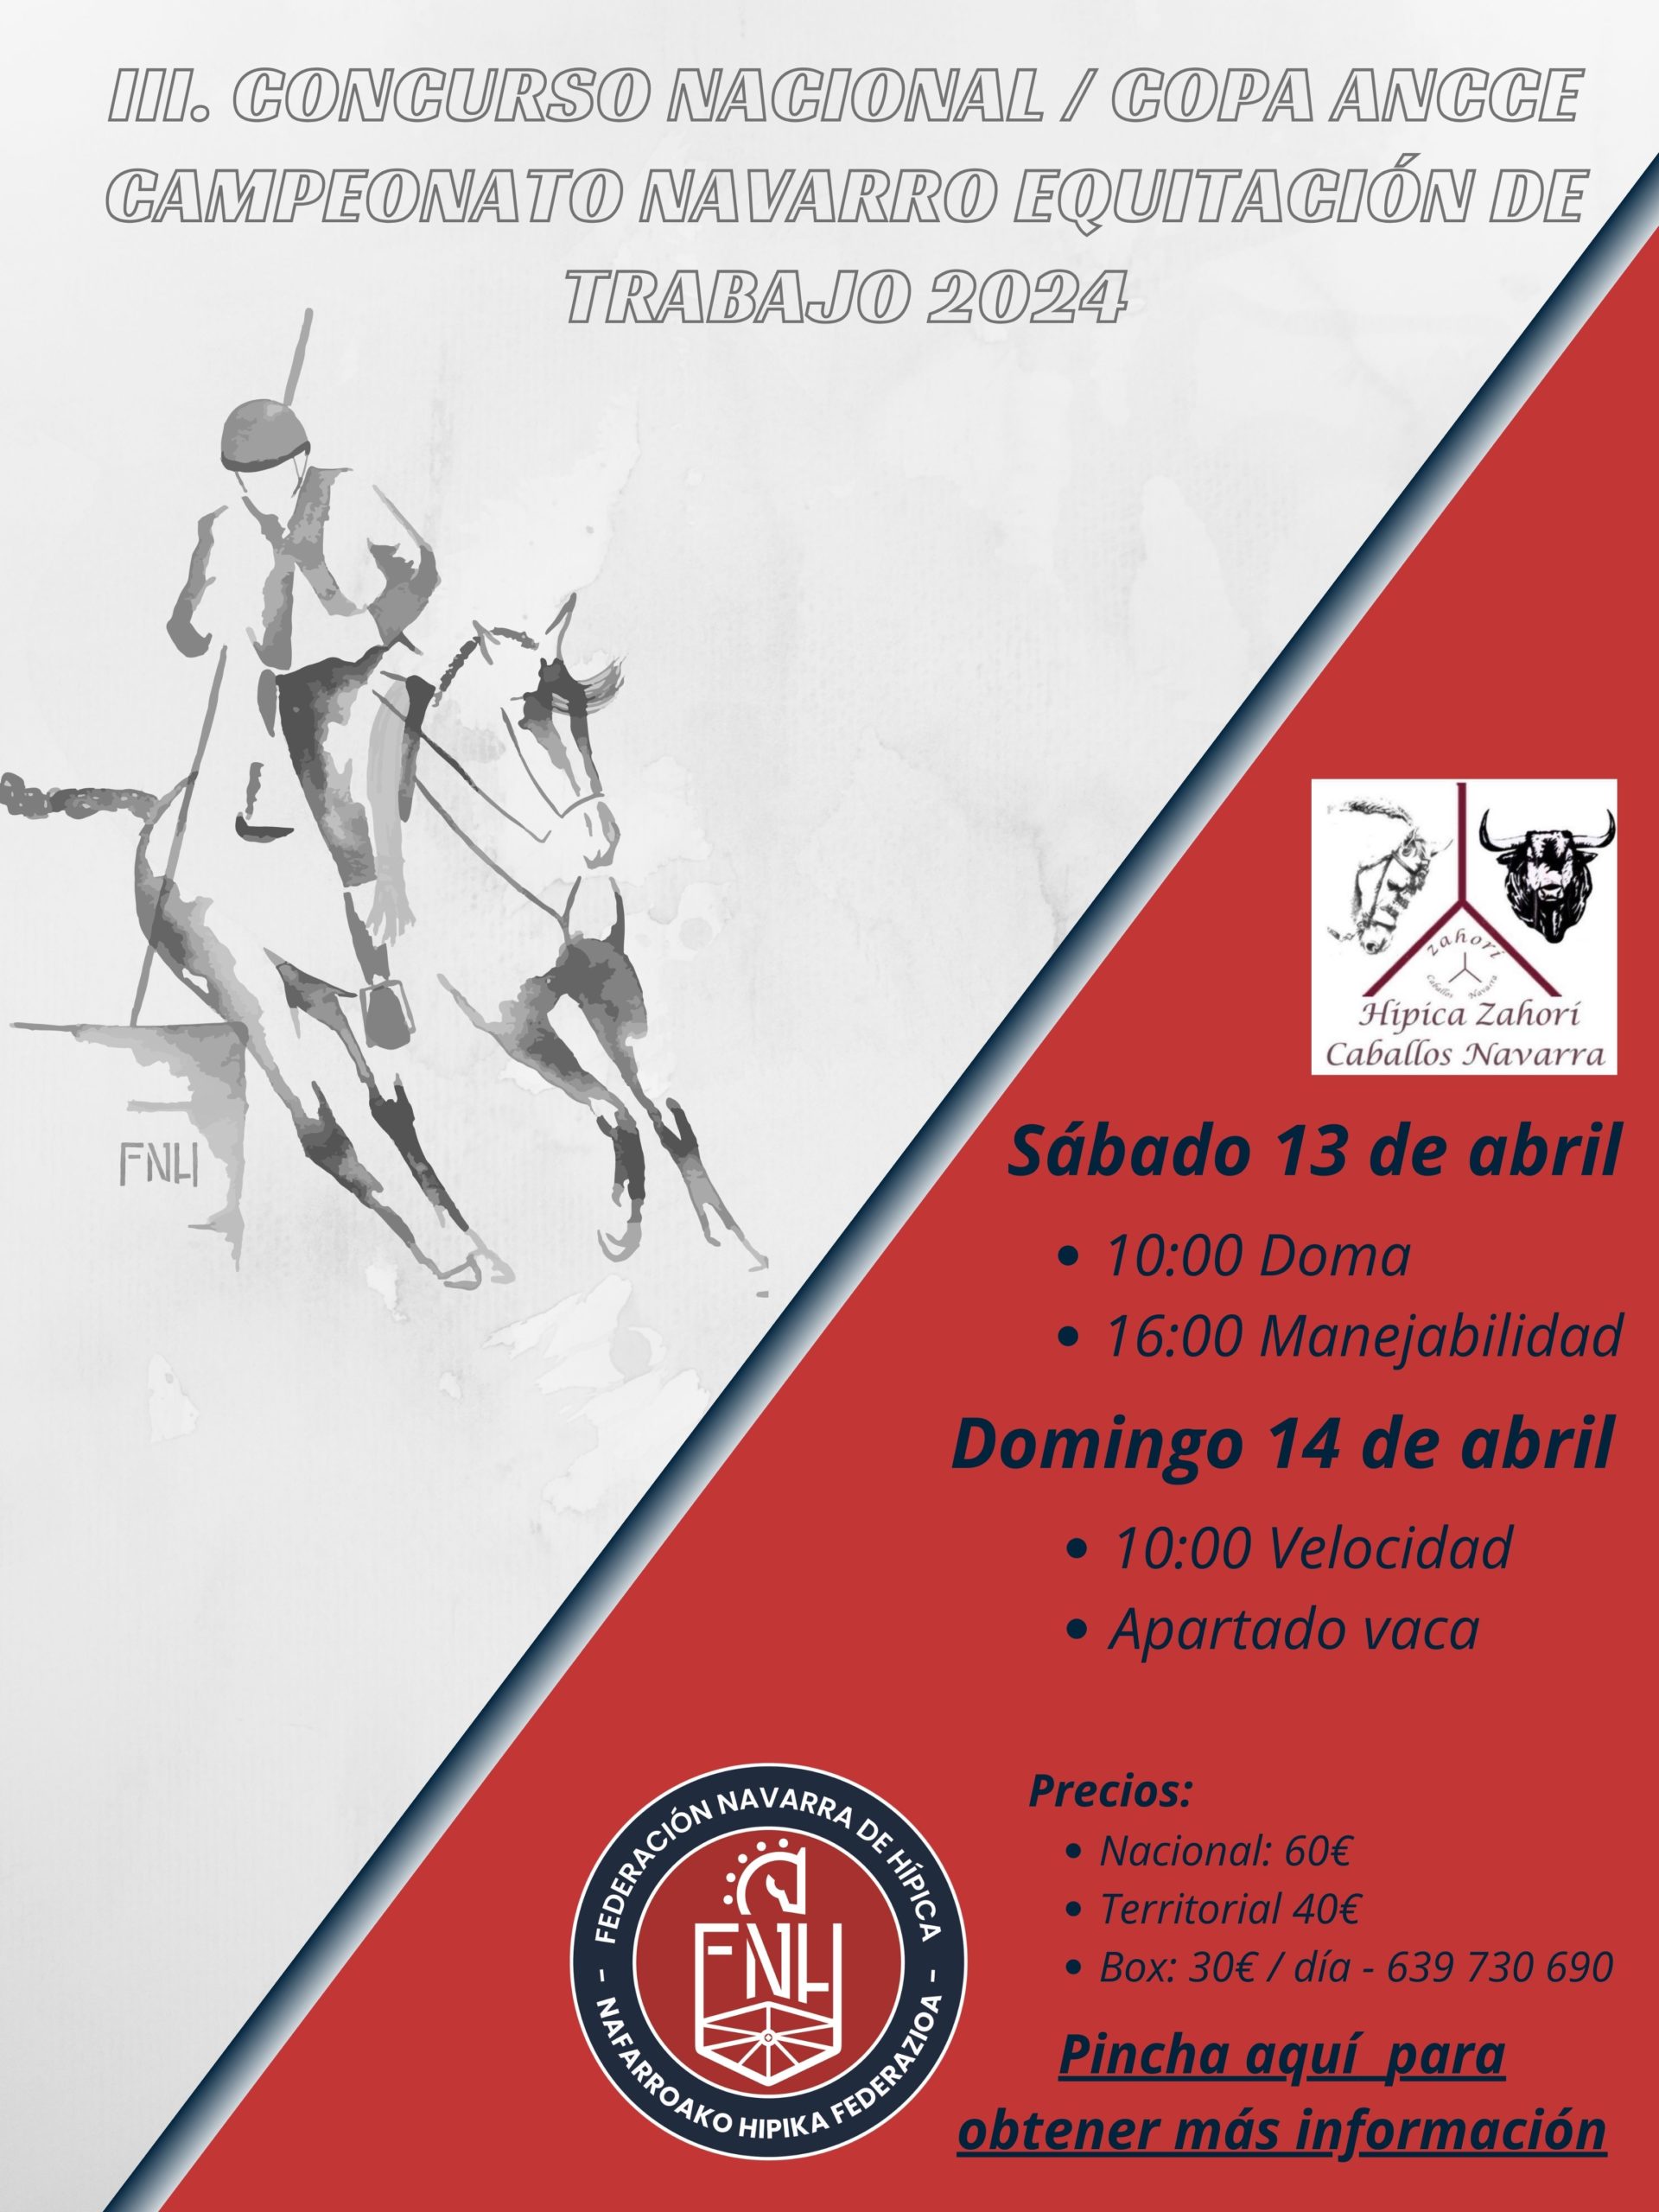 III. Concurso Nacional – Copa Ancce / Campeonato Navarro Equitación de Trabajo 2024